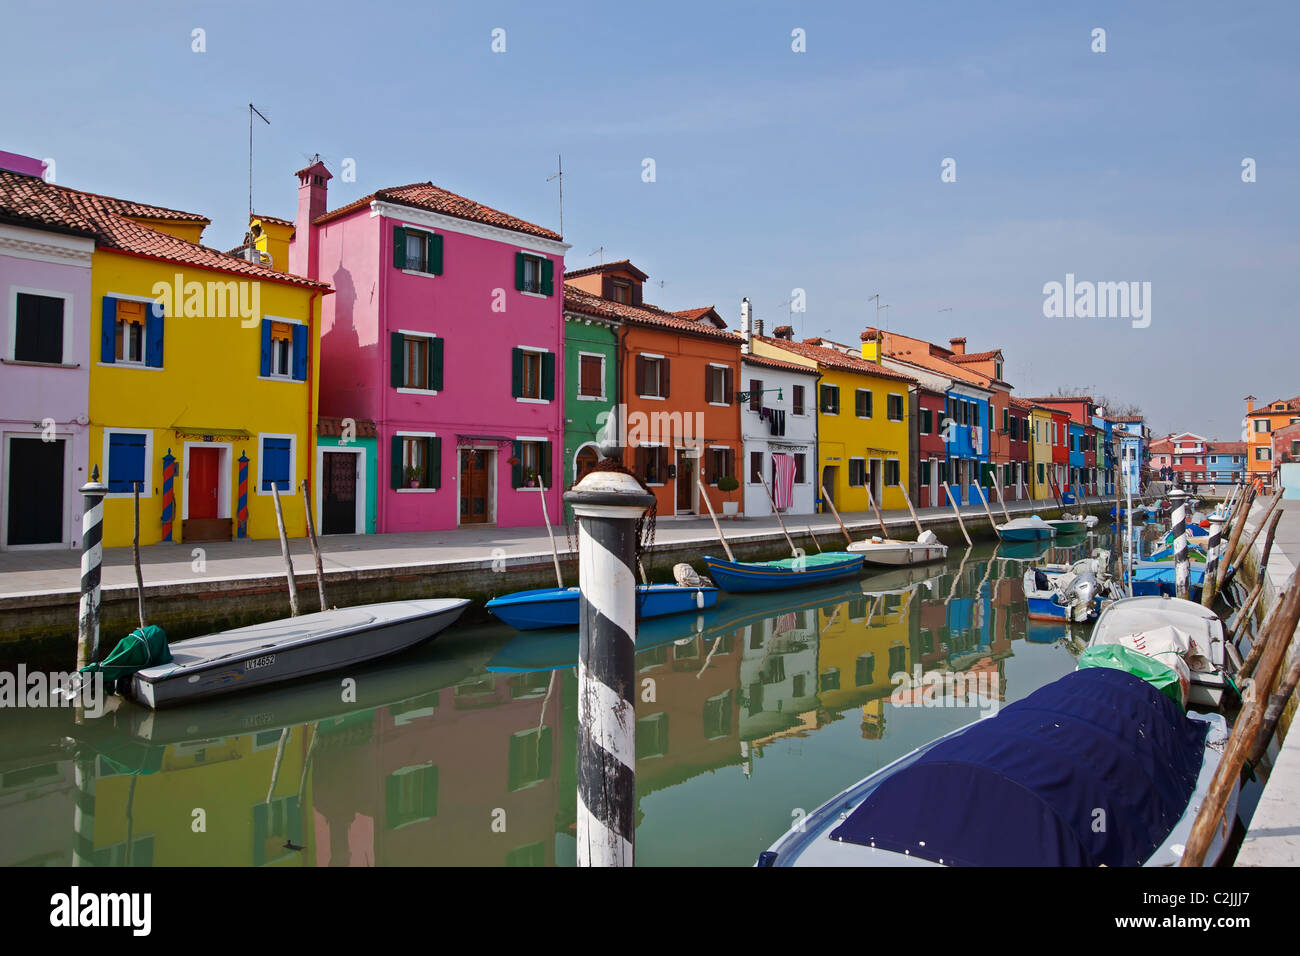 Burano - Venice - Italy Stock Photo